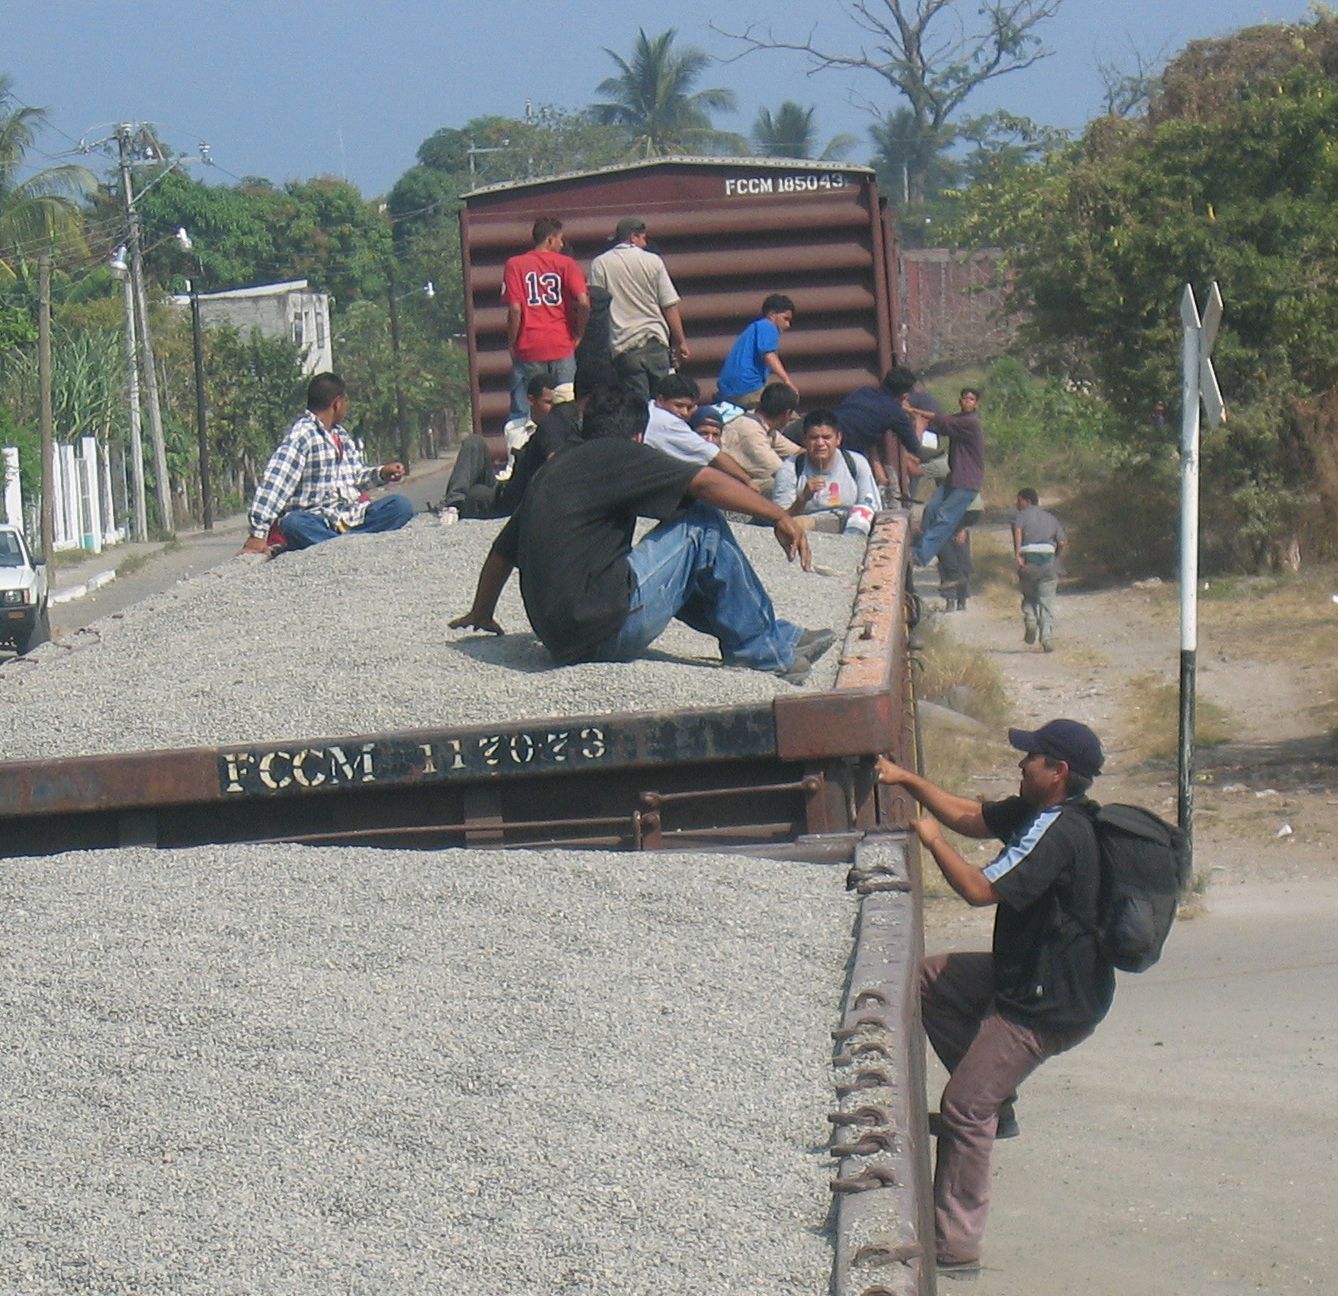 Tapachula, Mexiko: Migranten klettern auf einen offenen Kieswaggon (© Erika Harzer)